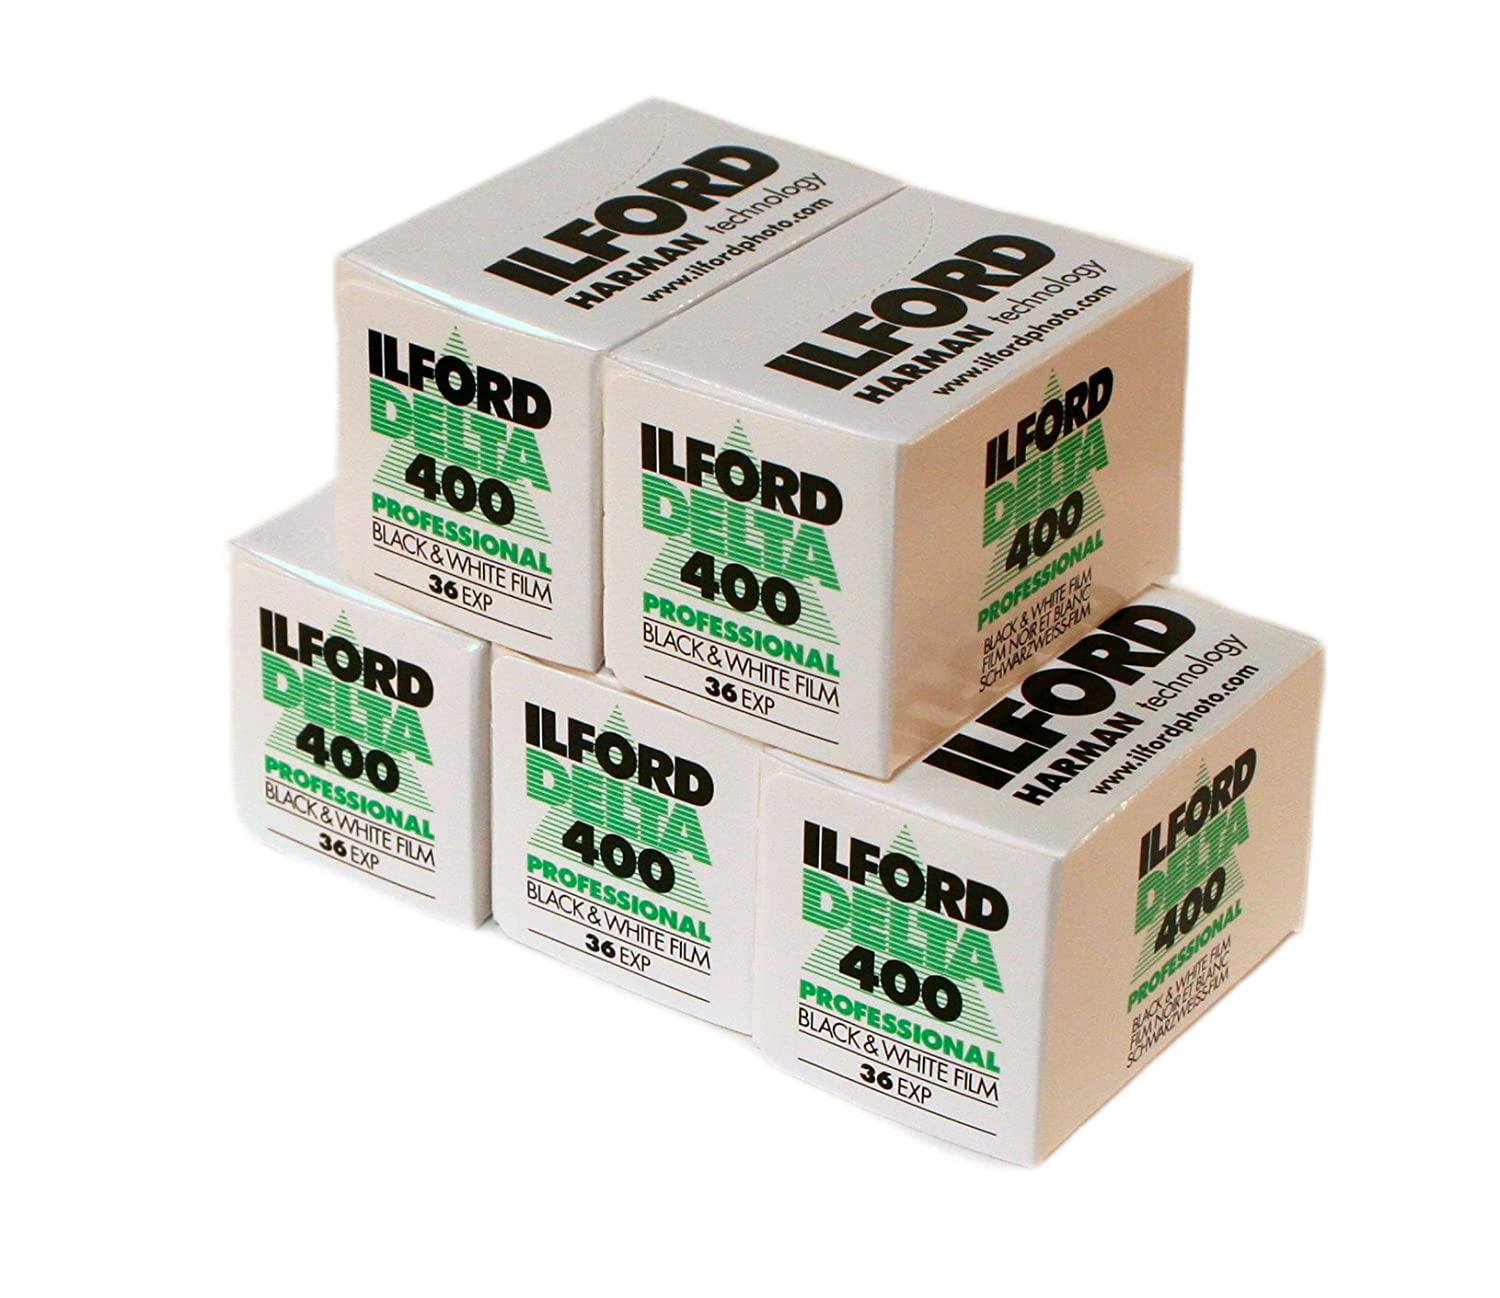 Ilford Delta 400 Professional 35mm Black & White Film - 36 exp